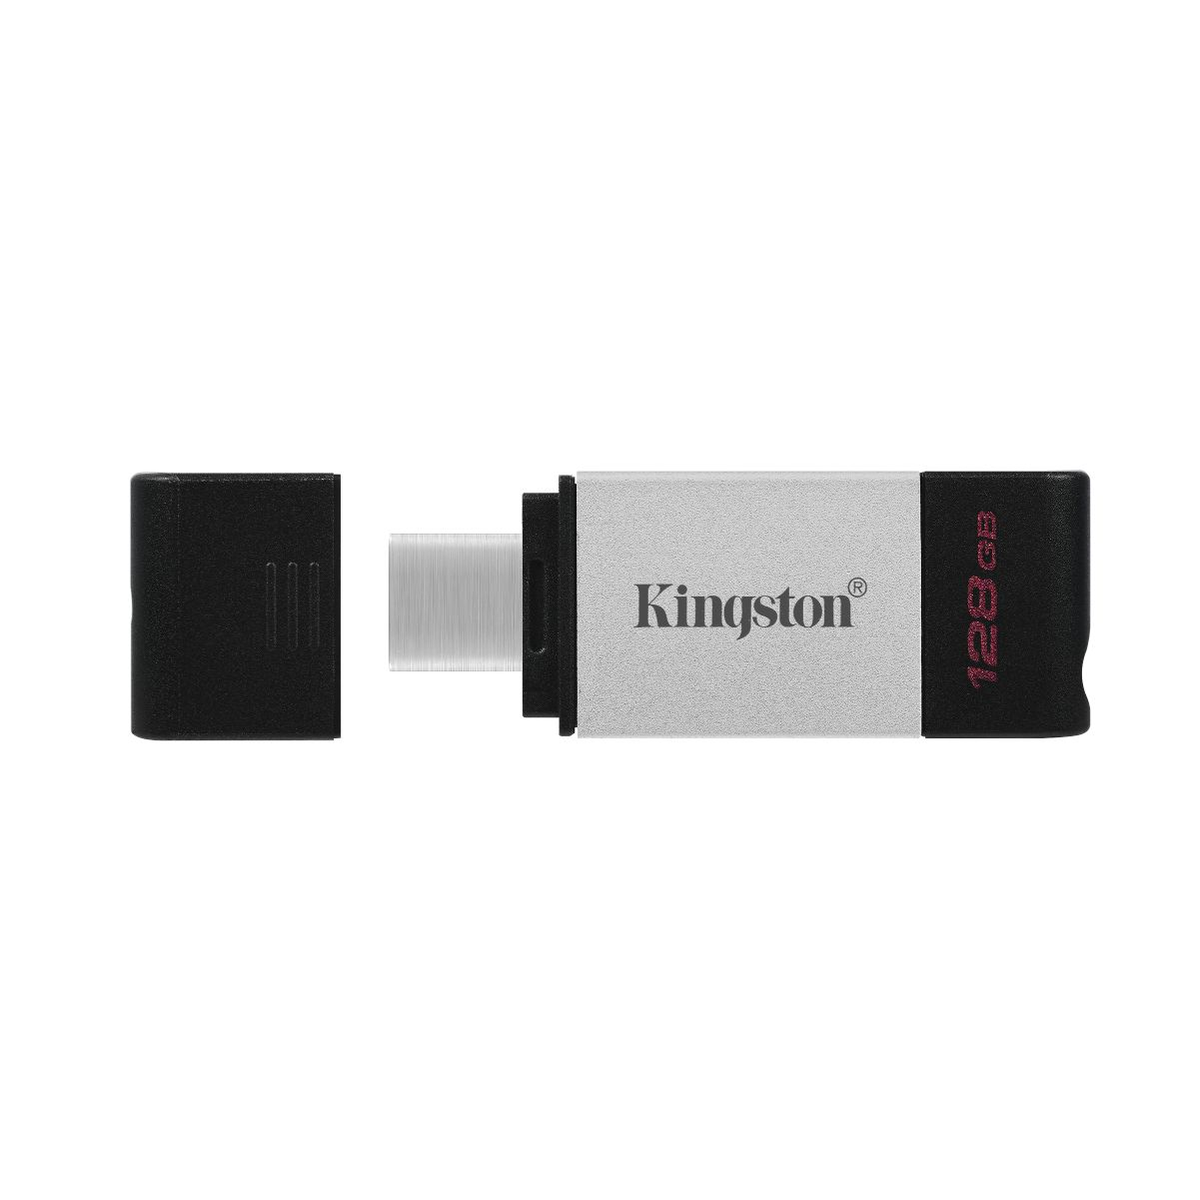 128 KINGSTON (Schwarz, DT80/128GB GB) Stick USB